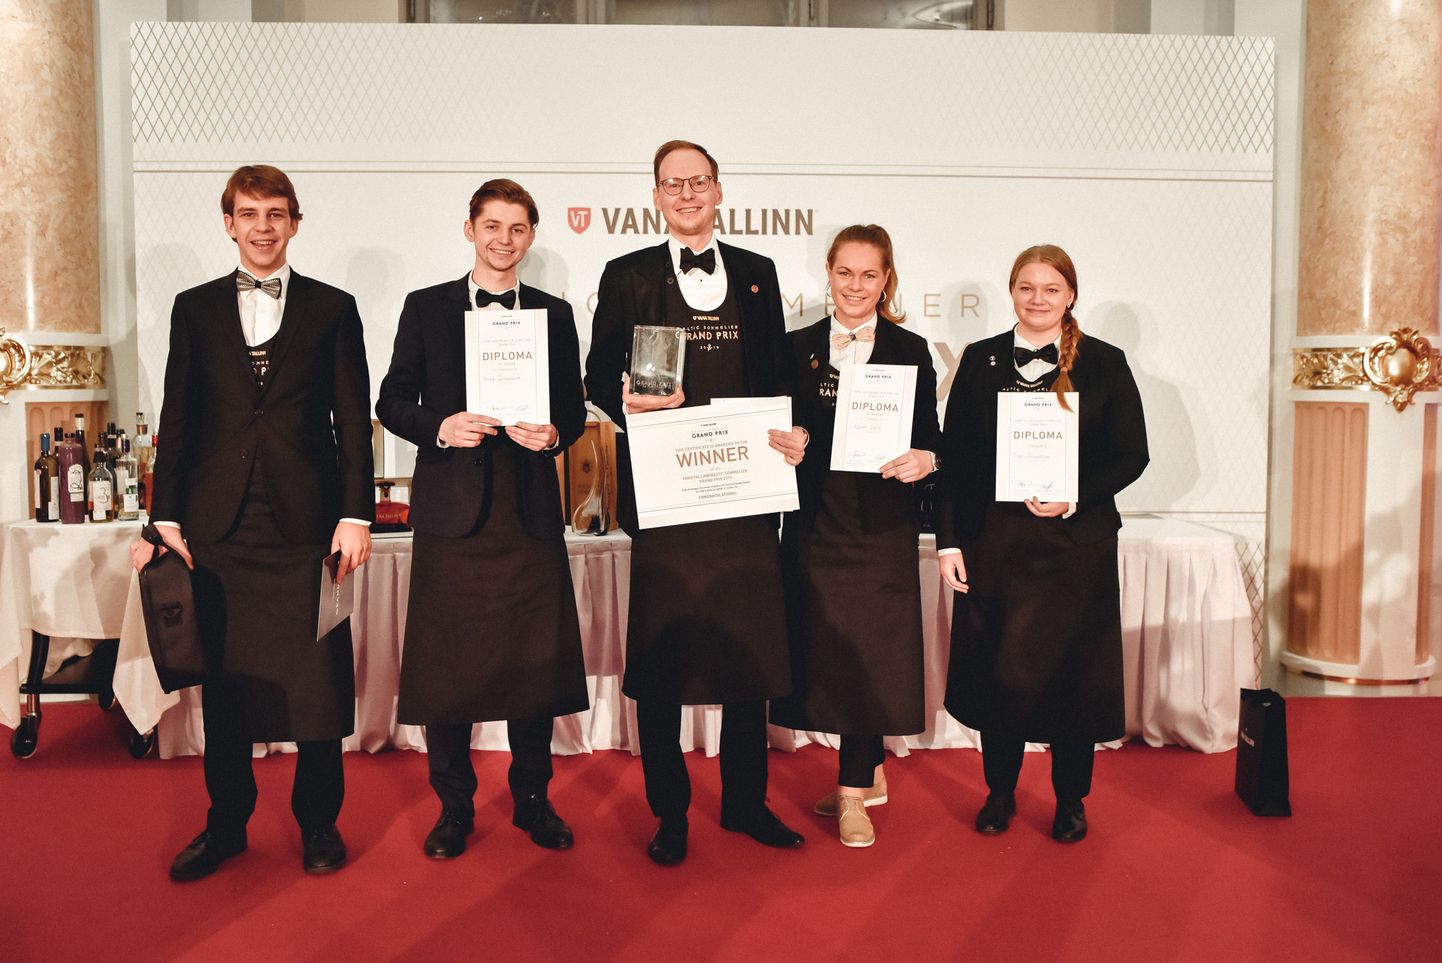 Vīnziņu konkurss “Vana Tallinn Grand Prix 2019”